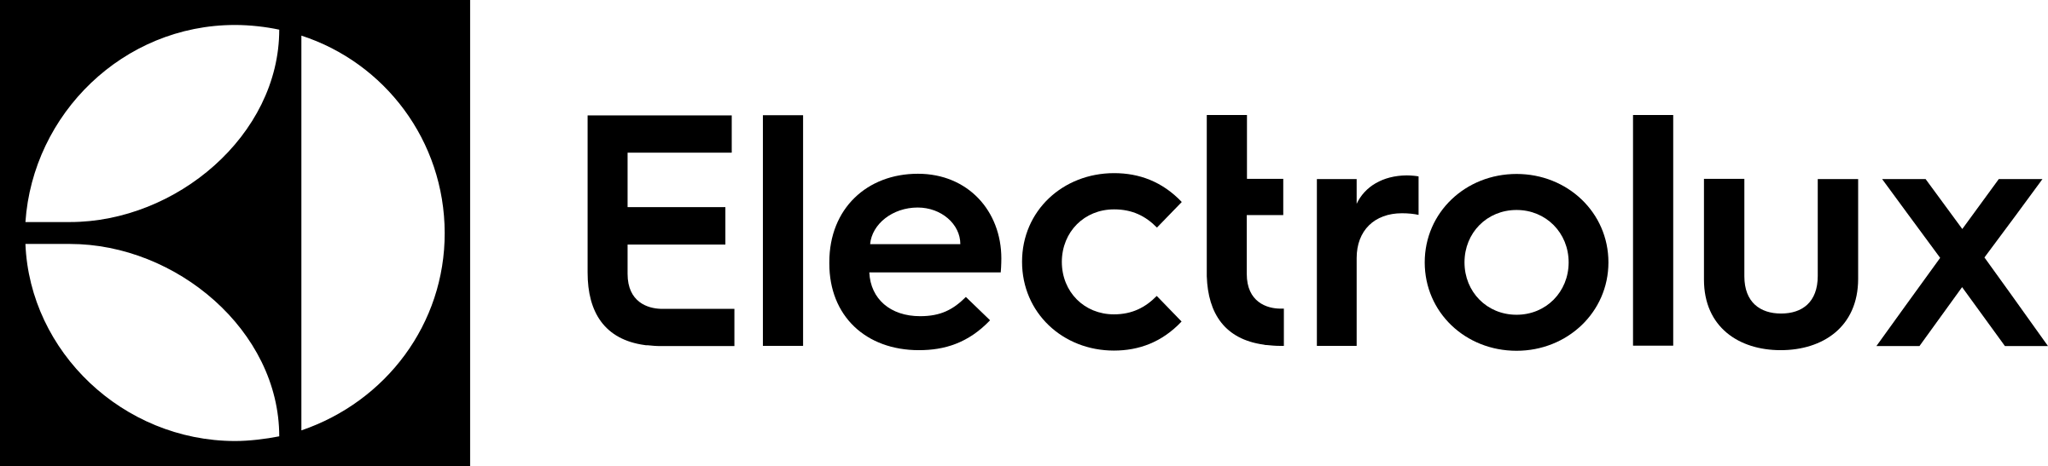 electrolux black logo